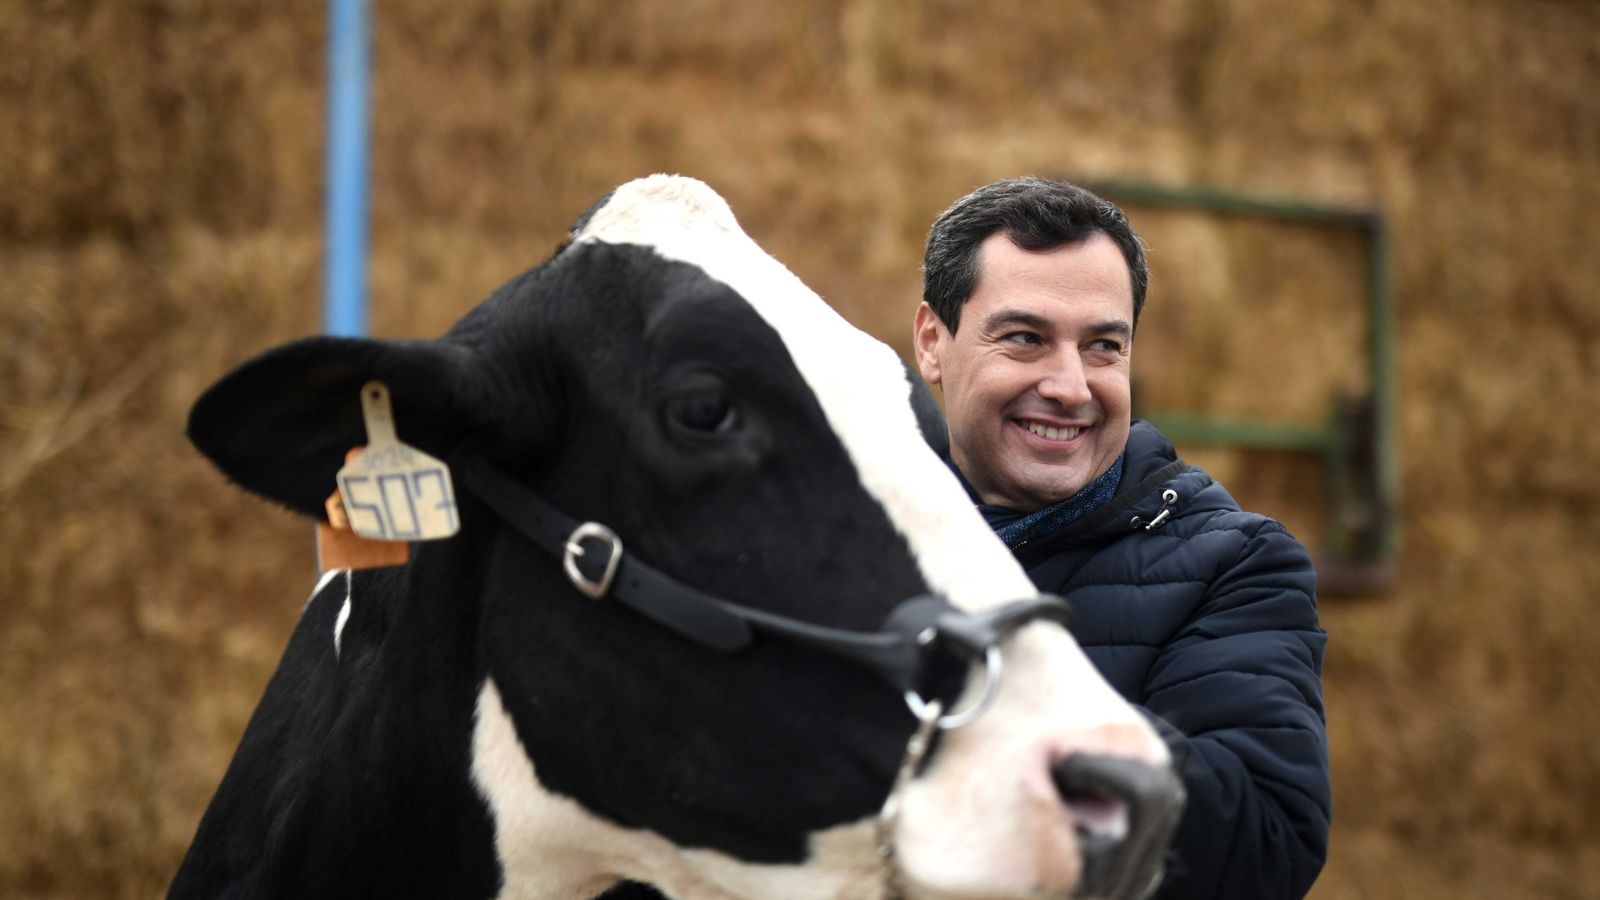 Foto: El candidato del PP a la presidencia de la Junta de Andalucía, Juanma Moreno, acaricia una vaca durante la visita a una granja. (EFE)